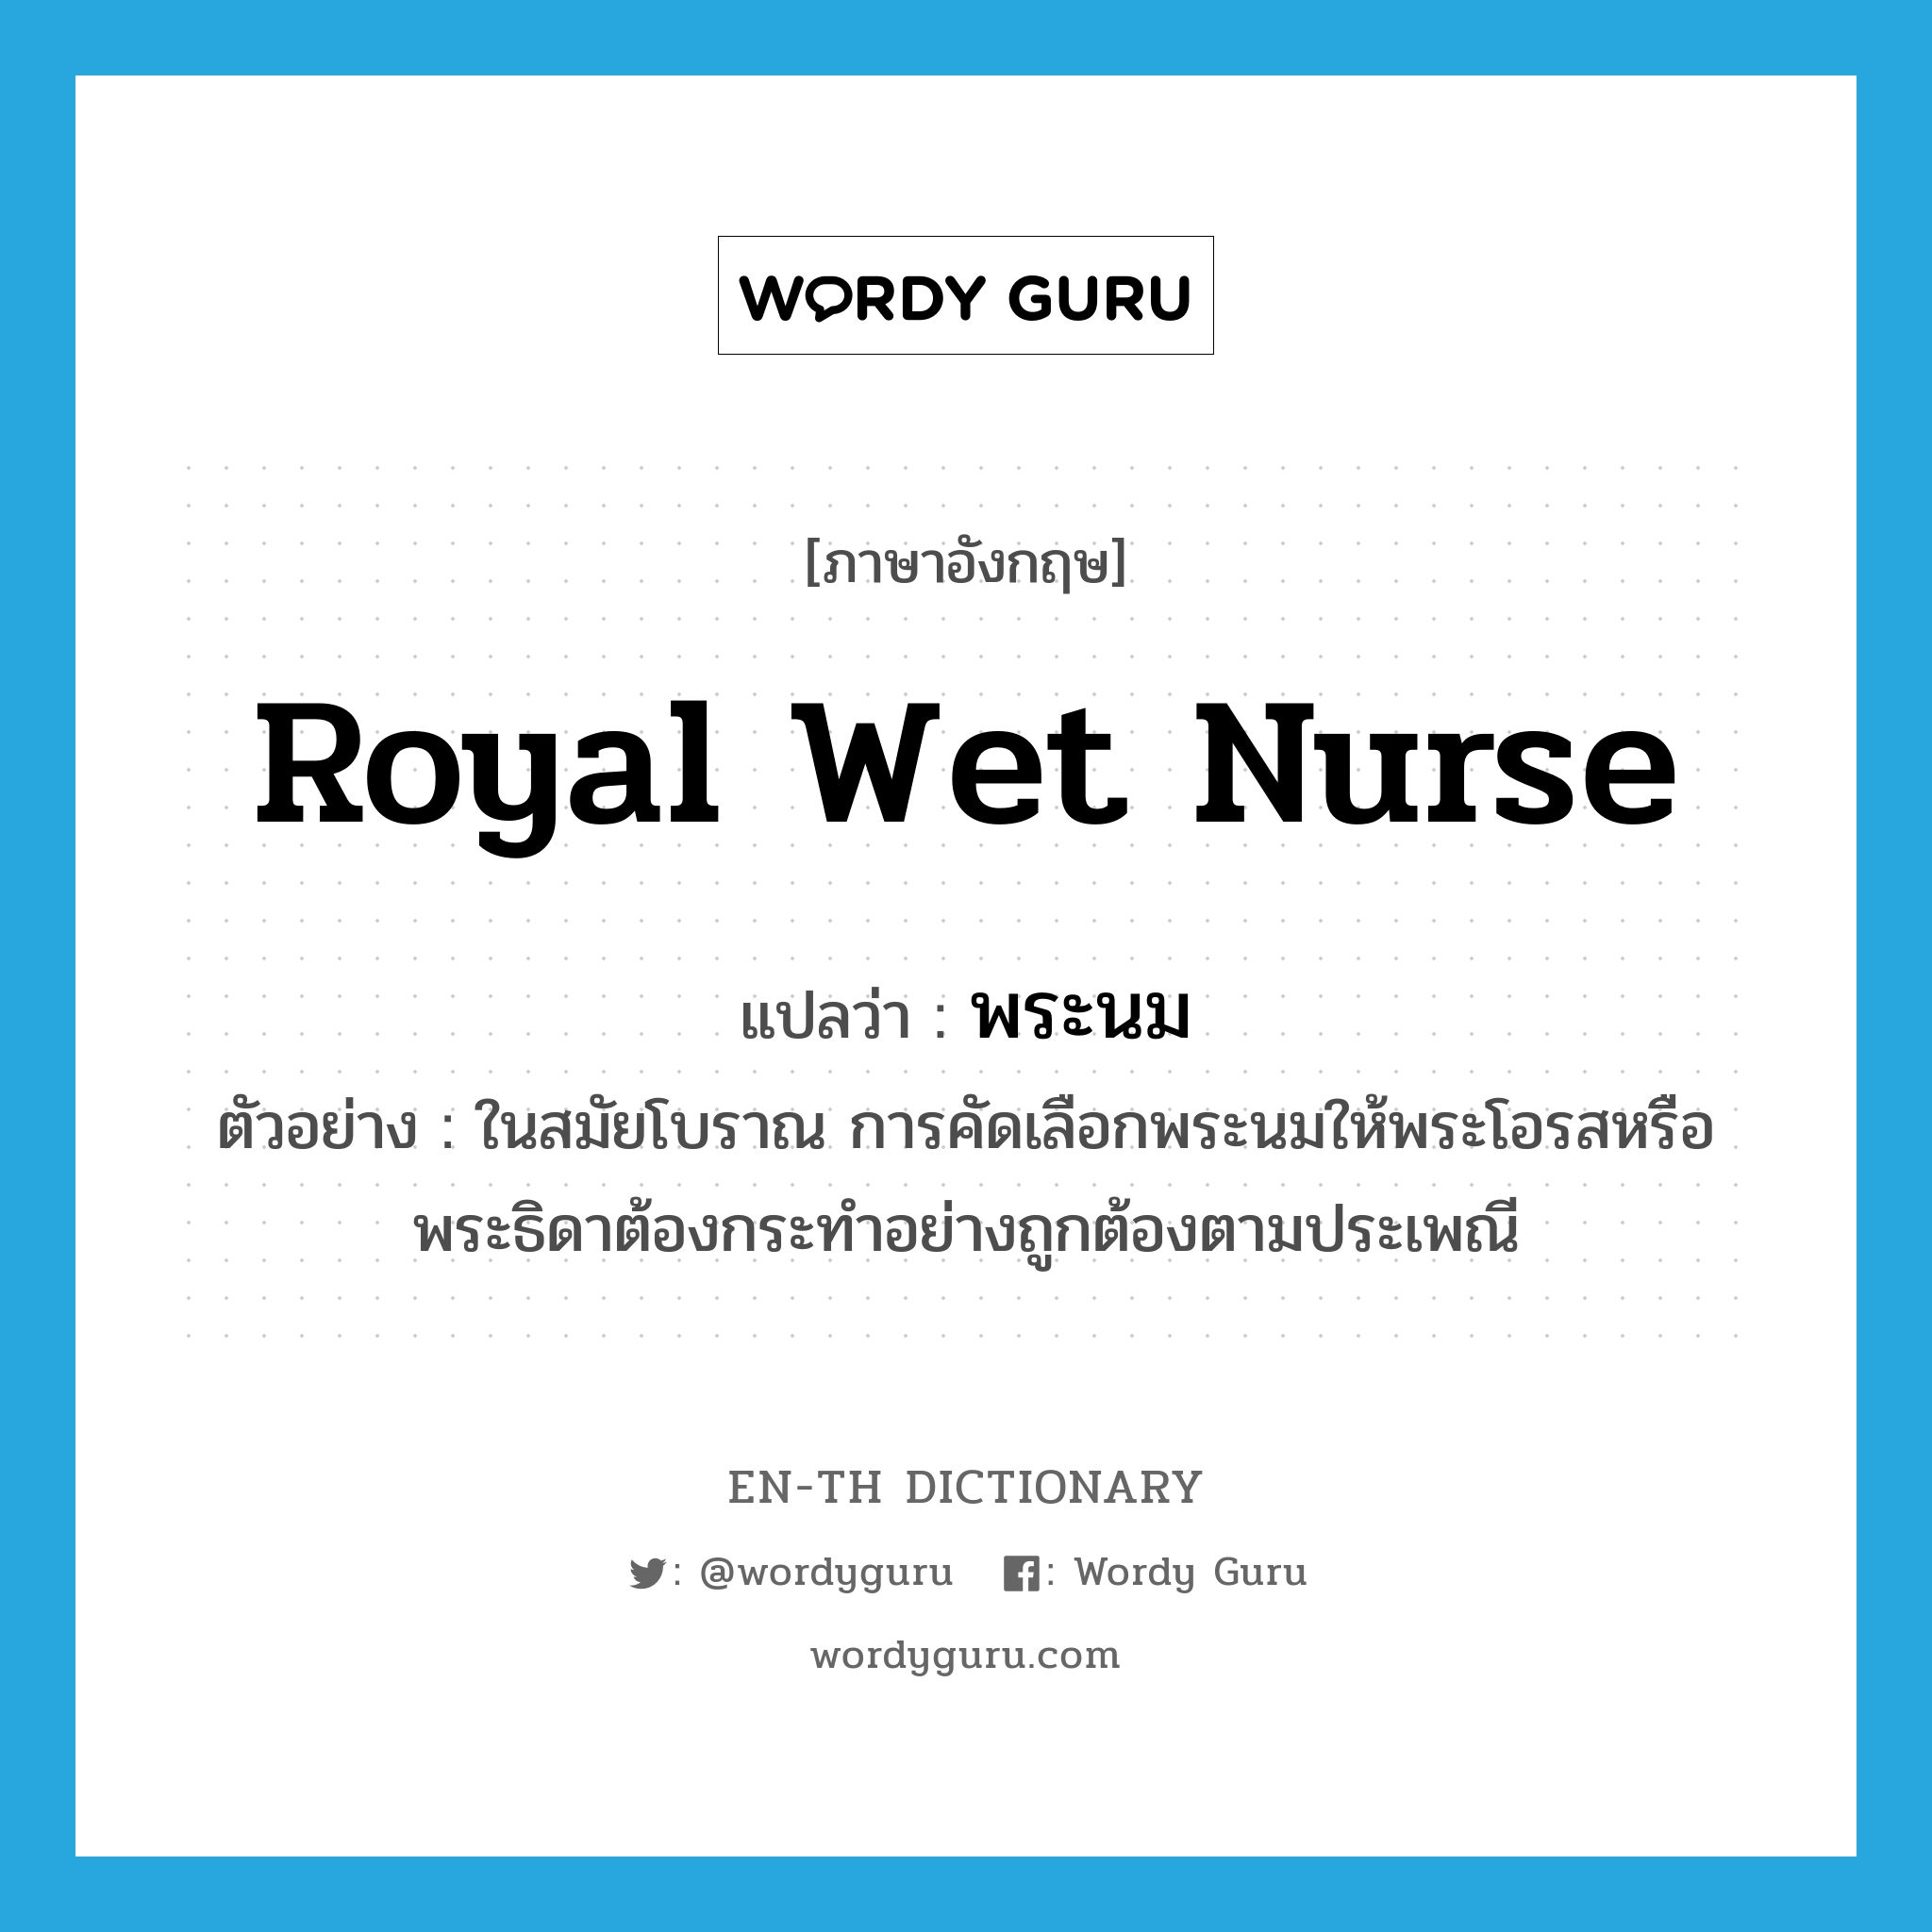 royal wet nurse แปลว่า?, คำศัพท์ภาษาอังกฤษ royal wet nurse แปลว่า พระนม ประเภท N ตัวอย่าง ในสมัยโบราณ การคัดเลือกพระนมให้พระโอรสหรือพระธิดาต้องกระทำอย่างถูกต้องตามประเพณี หมวด N